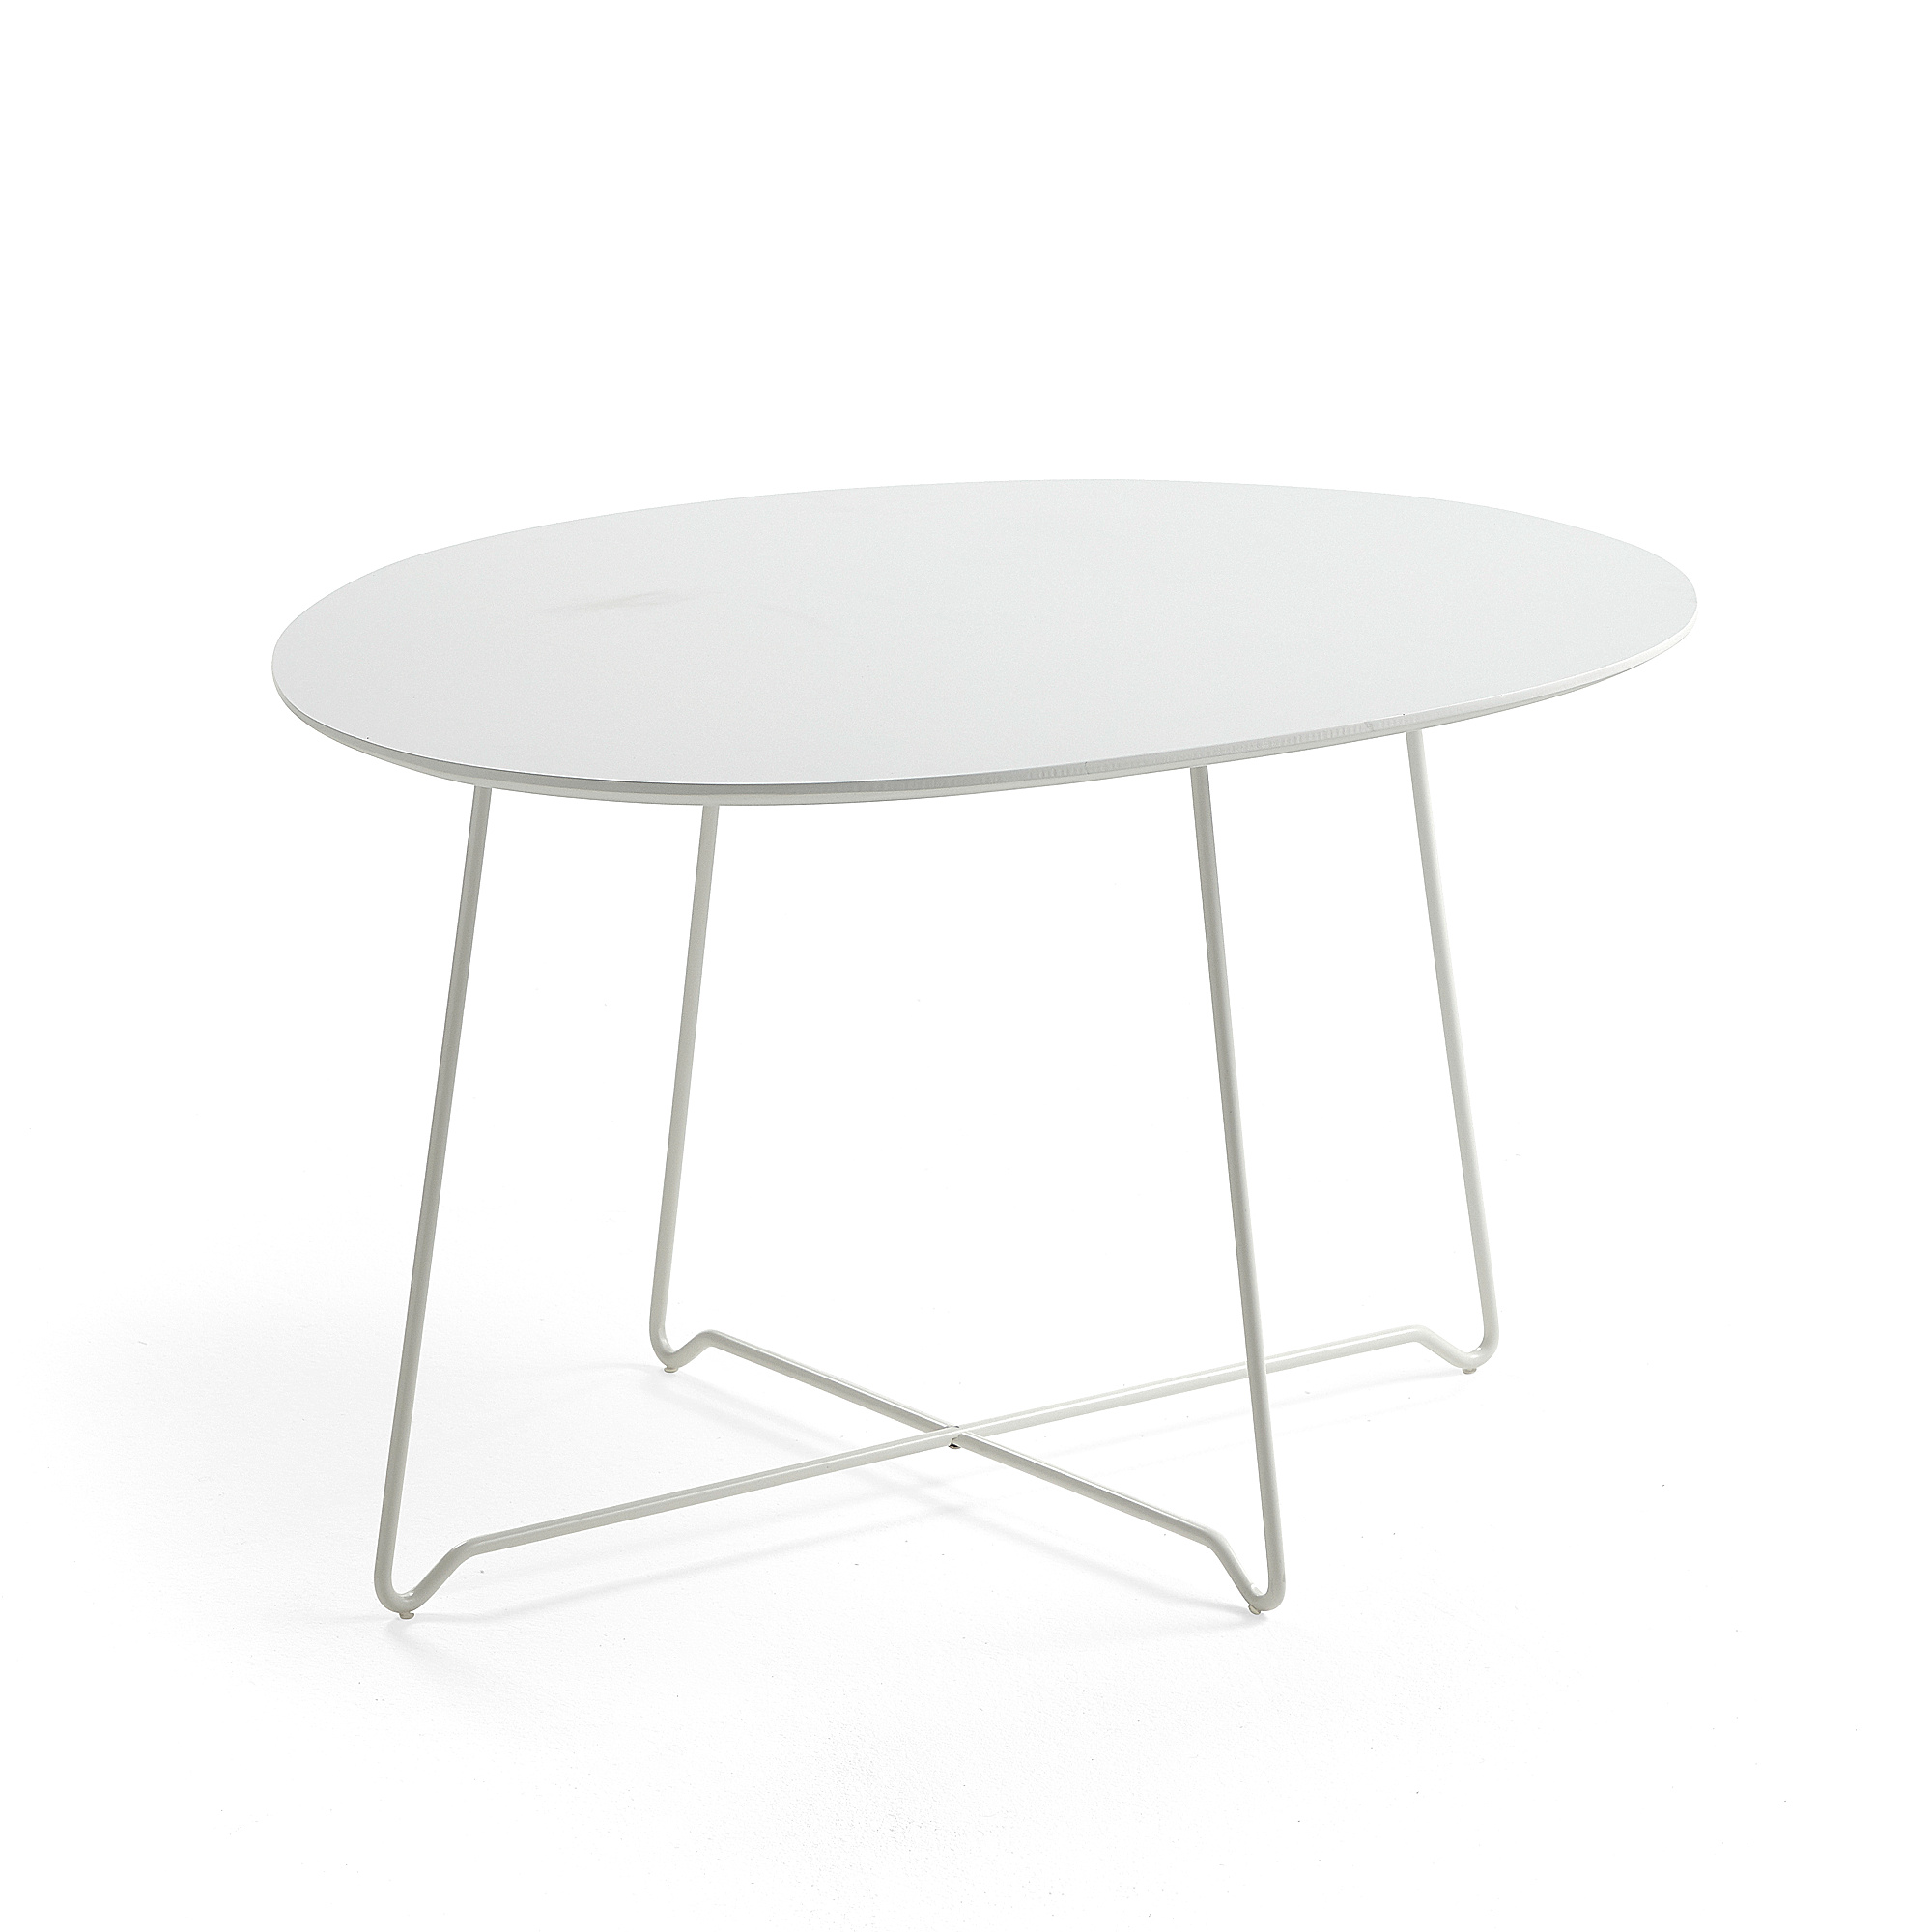 Kaviarenský stôl IRIS, asymetrický, biela